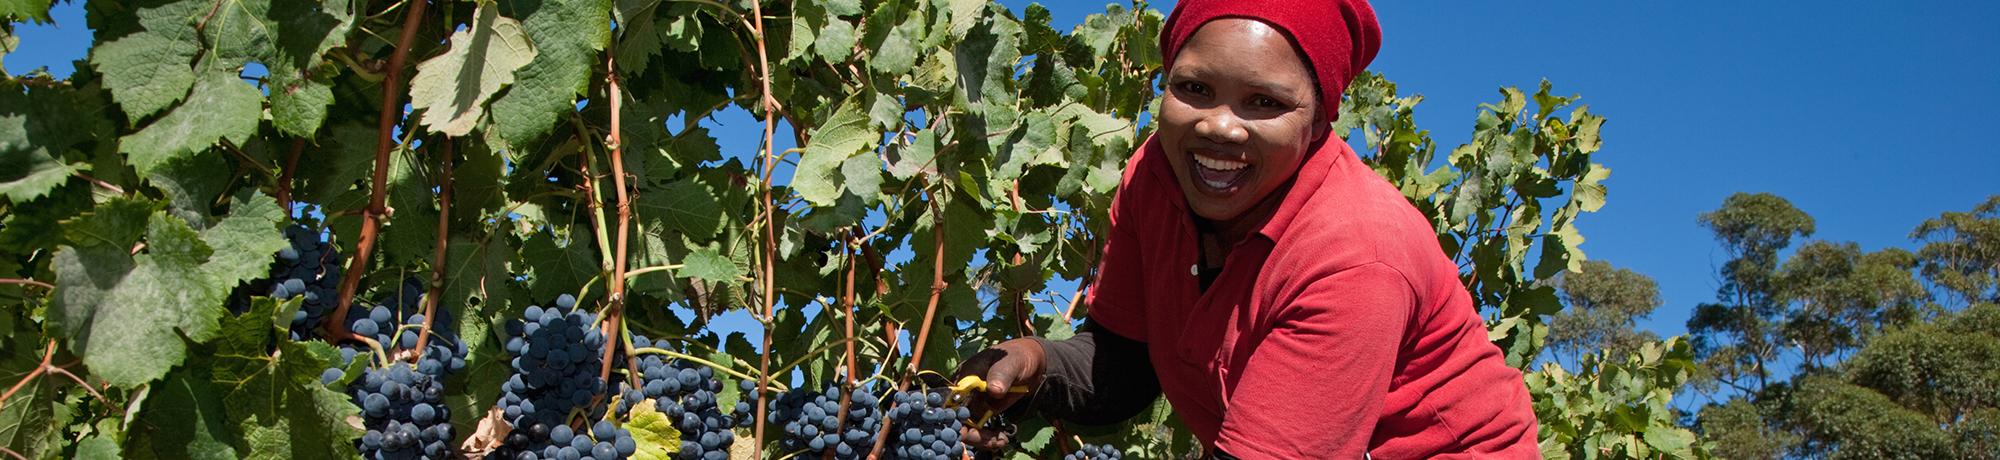 woman picking grapes in vineyard